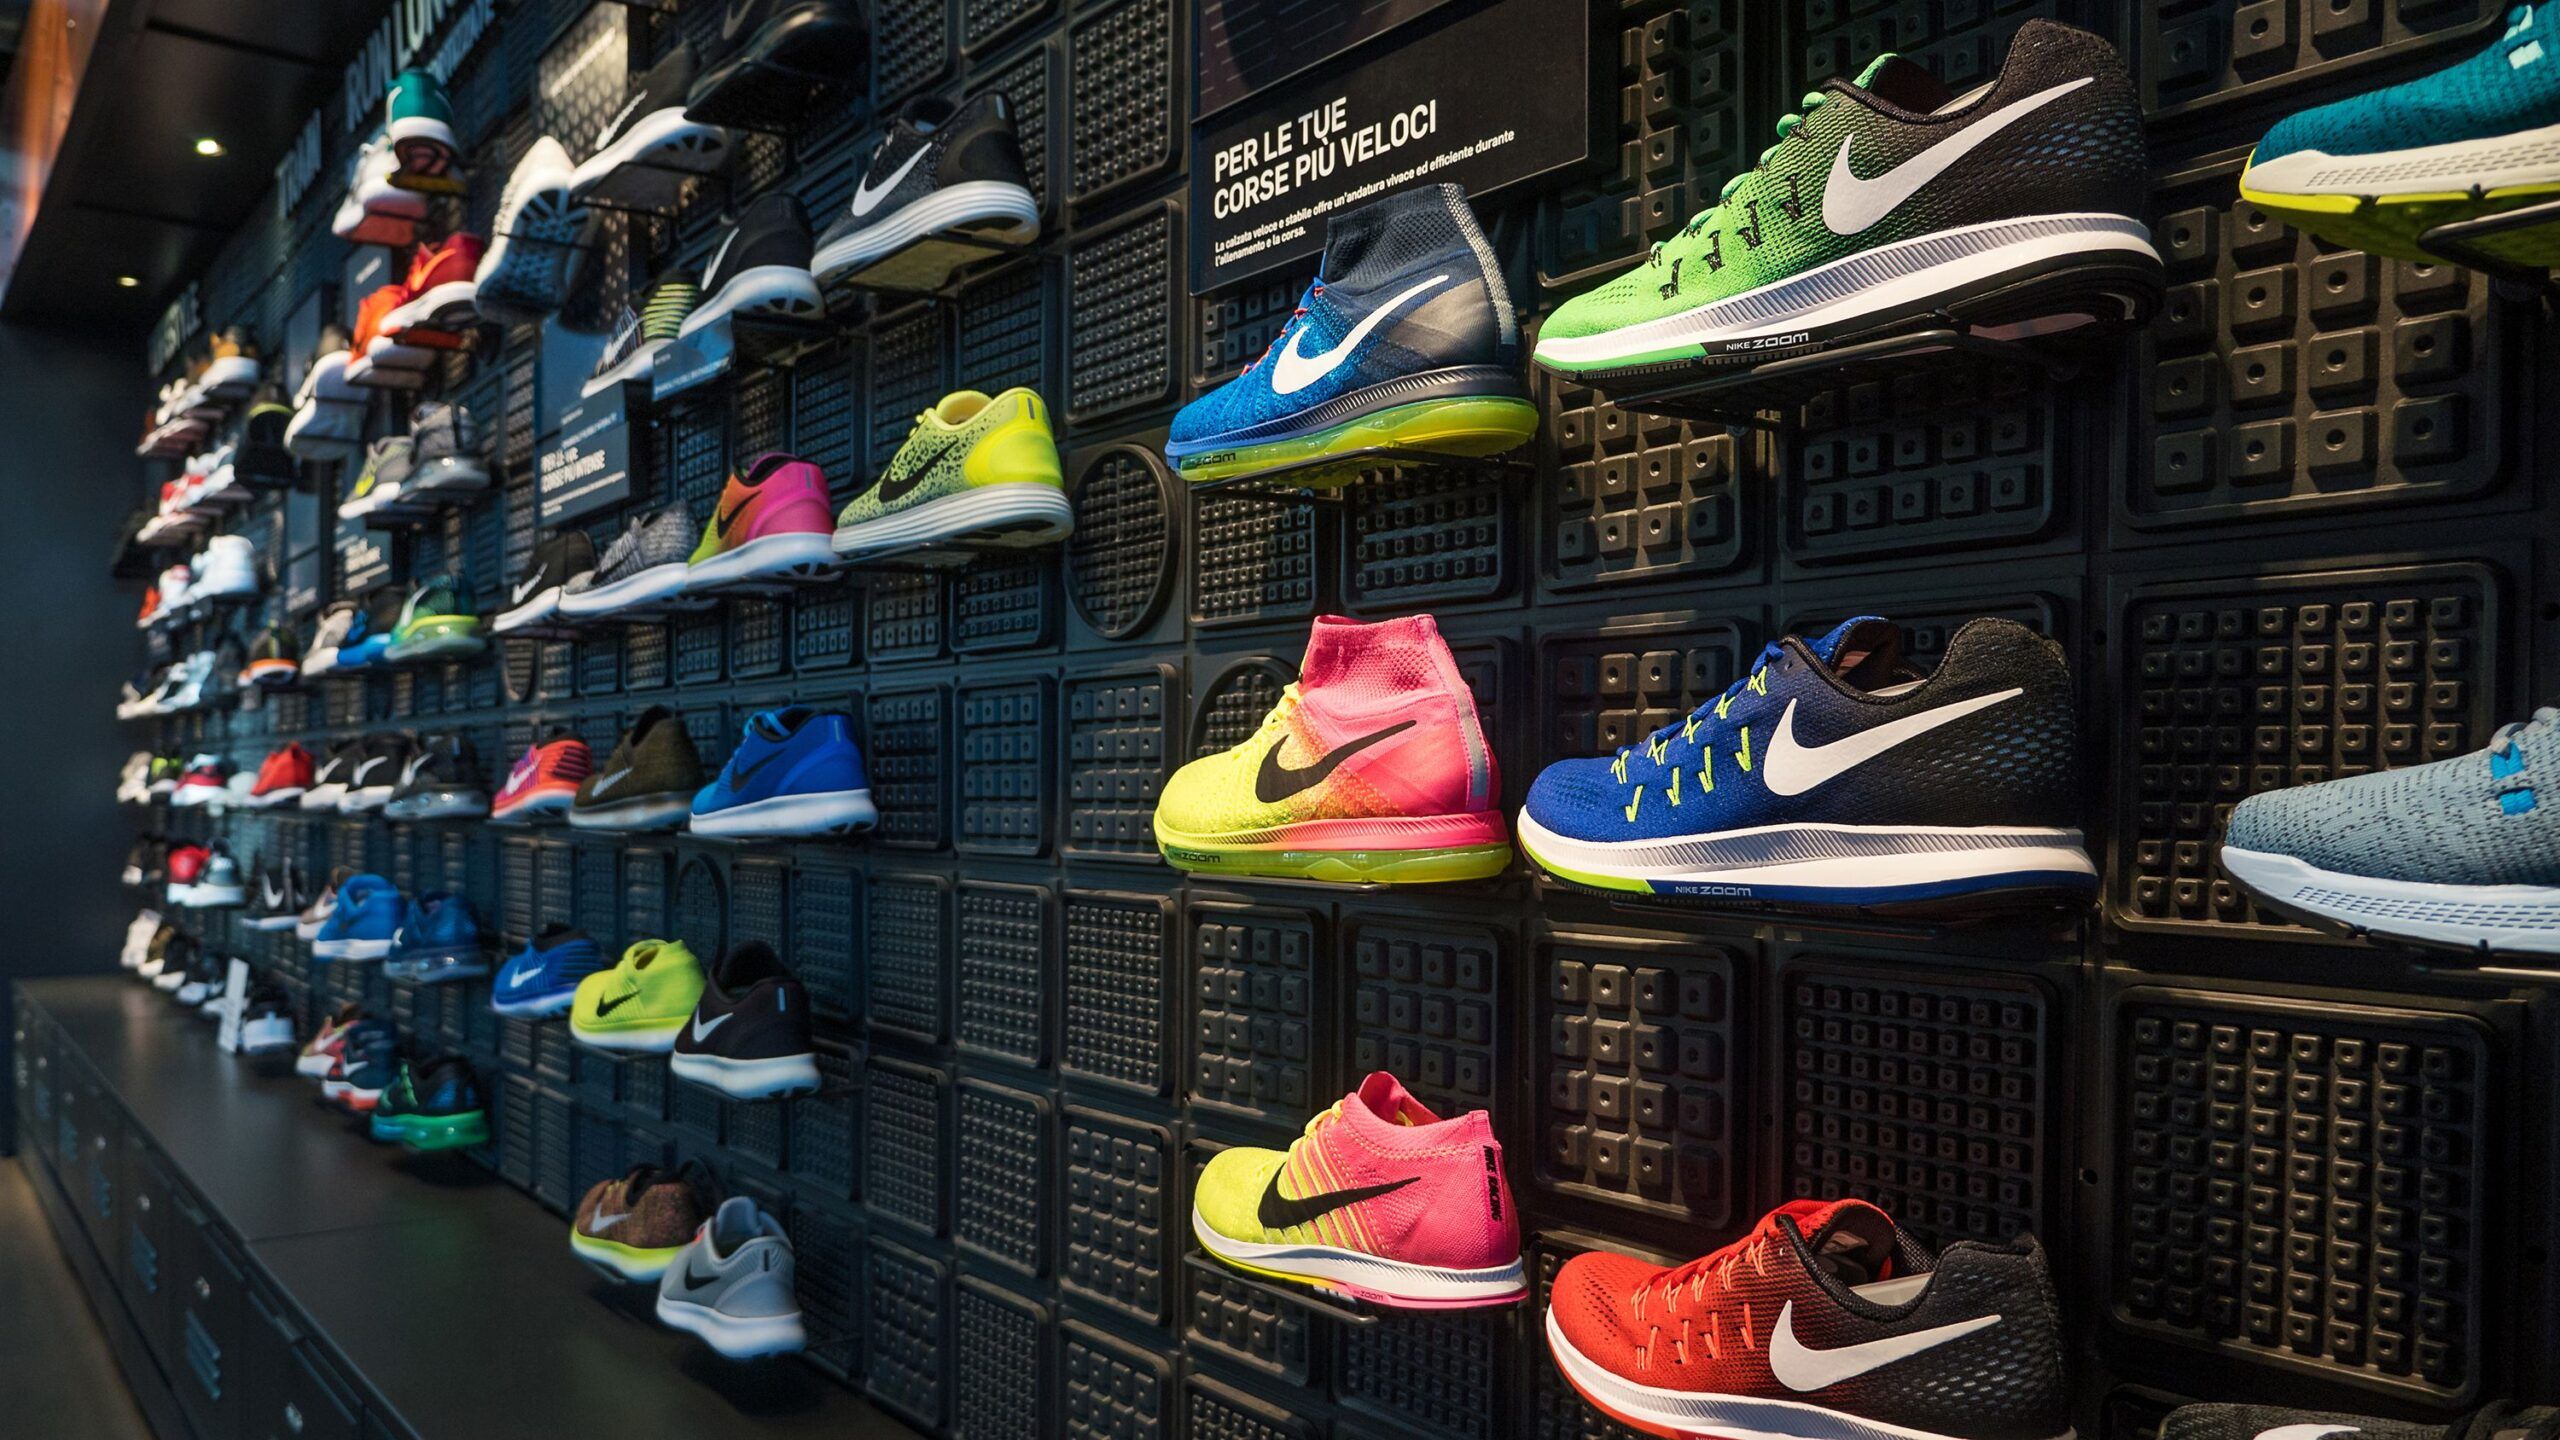 Nike demanda a por vender que infringen la marca y venden sin autorización - BeInCrypto